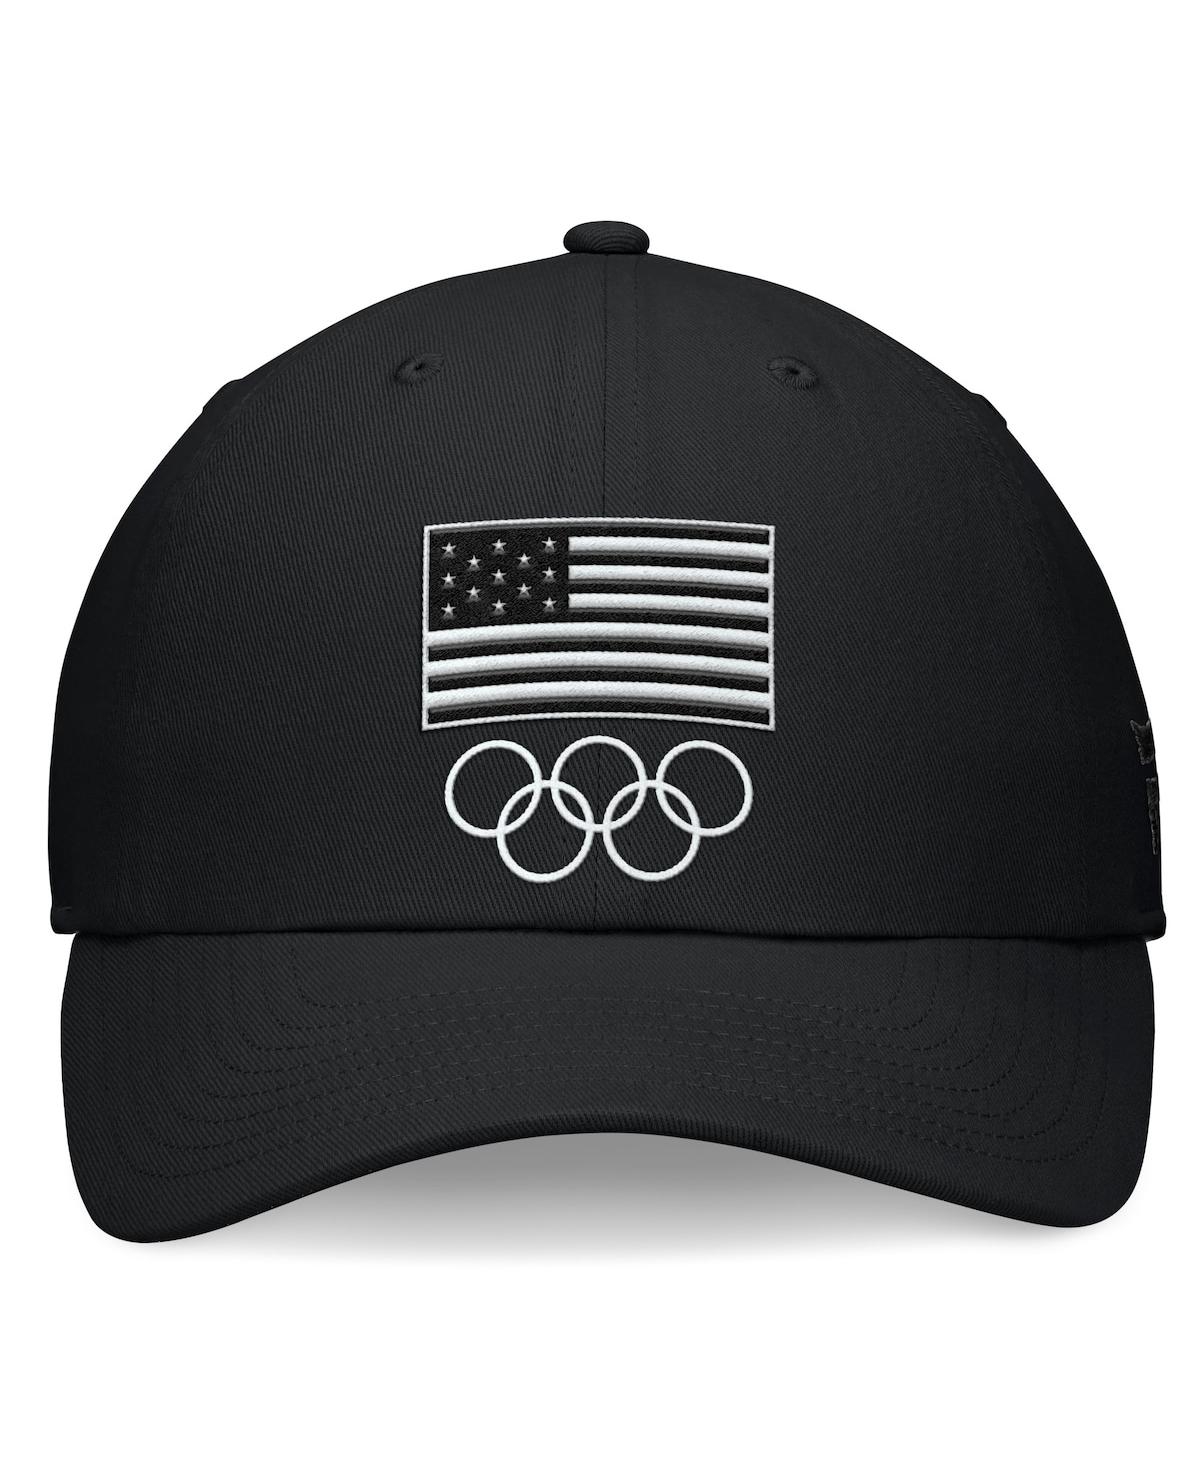 Shop Fanatics Branded Men's Black Team Usa Blackout Adjustable Hat